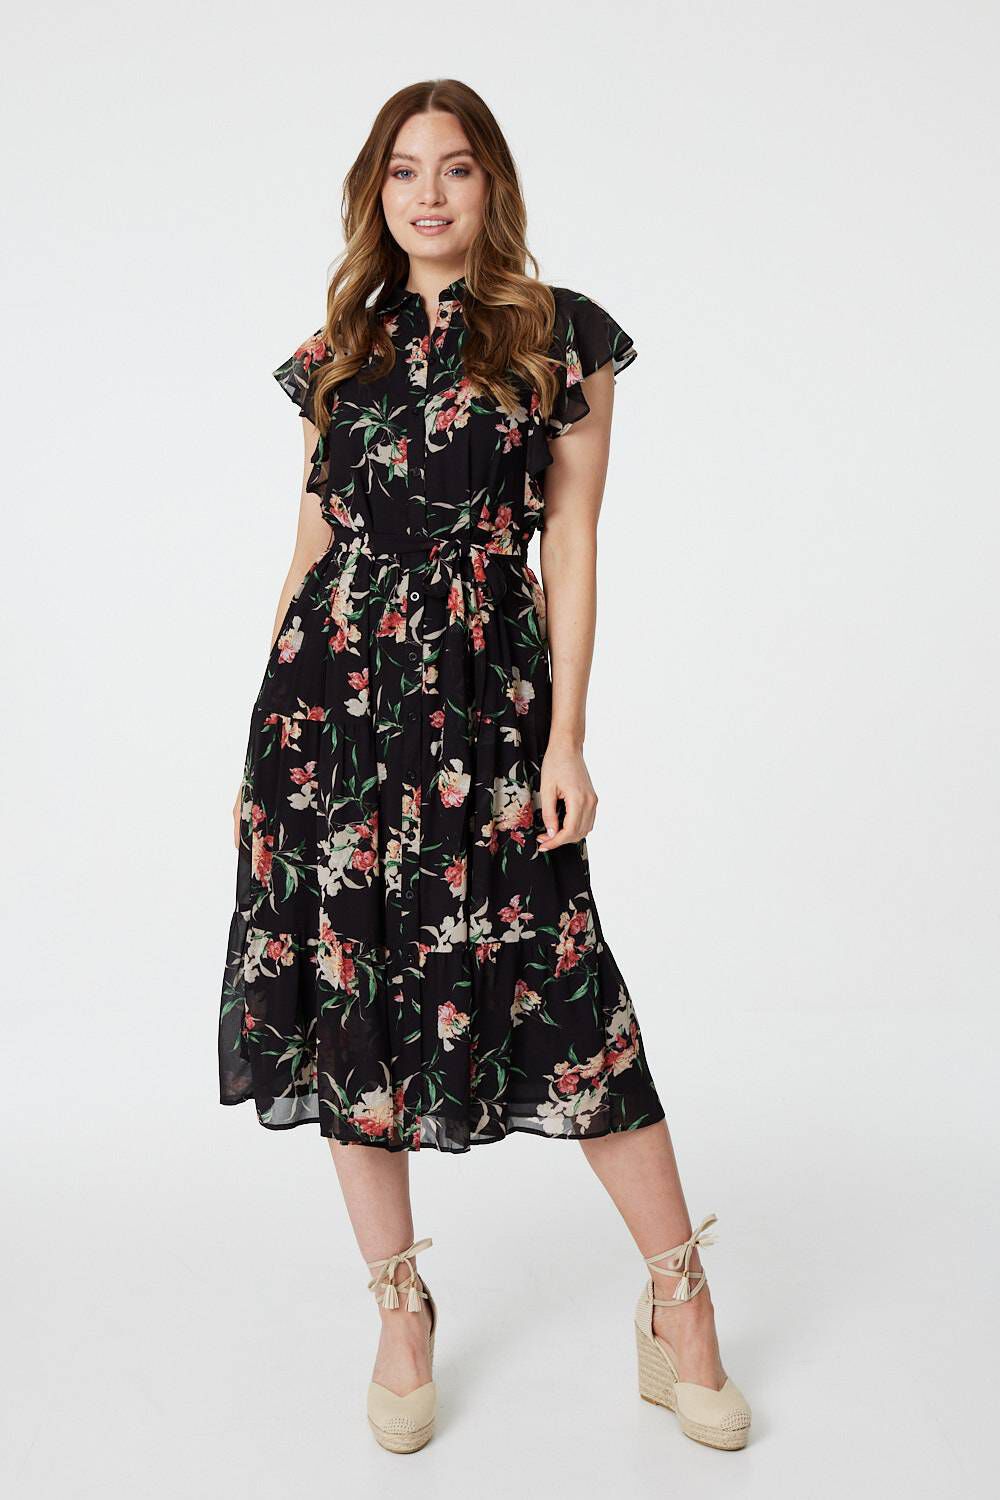 Izabel London Black - Floral Angel Sleeve Shirt Dress, Size: 18